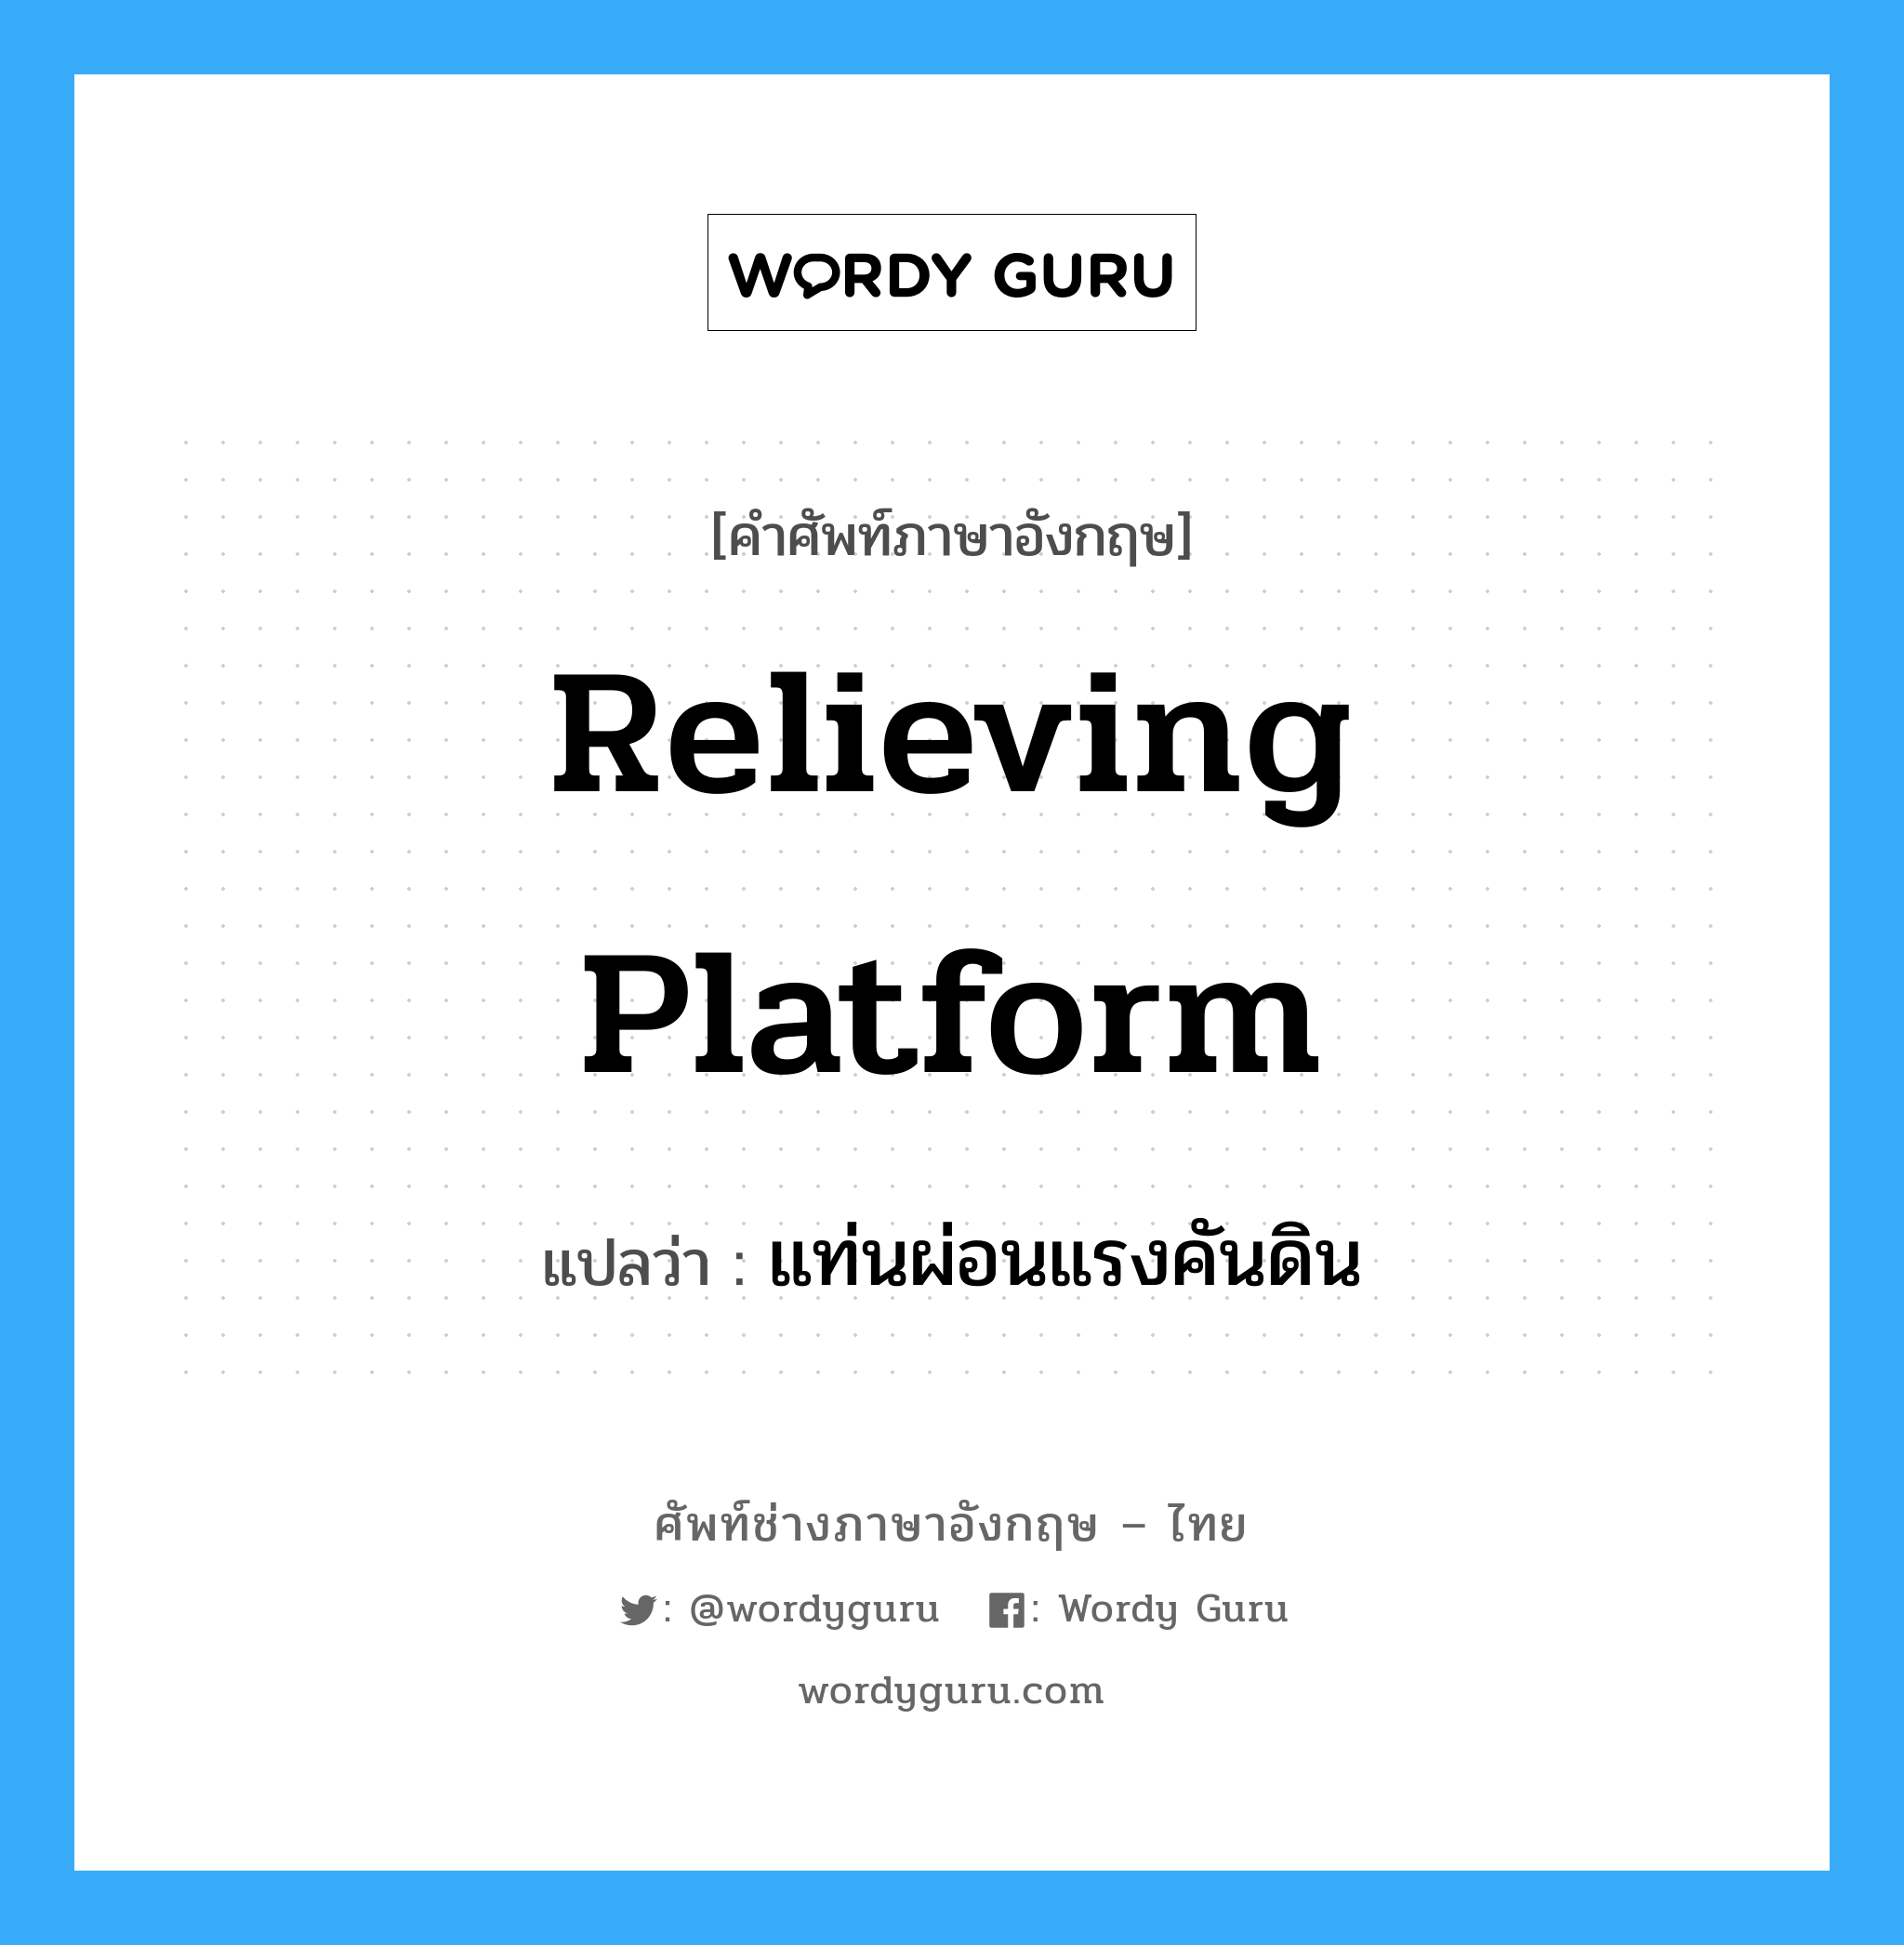 relieving platform แปลว่า?, คำศัพท์ช่างภาษาอังกฤษ - ไทย relieving platform คำศัพท์ภาษาอังกฤษ relieving platform แปลว่า แท่นผ่อนแรงคันดิน